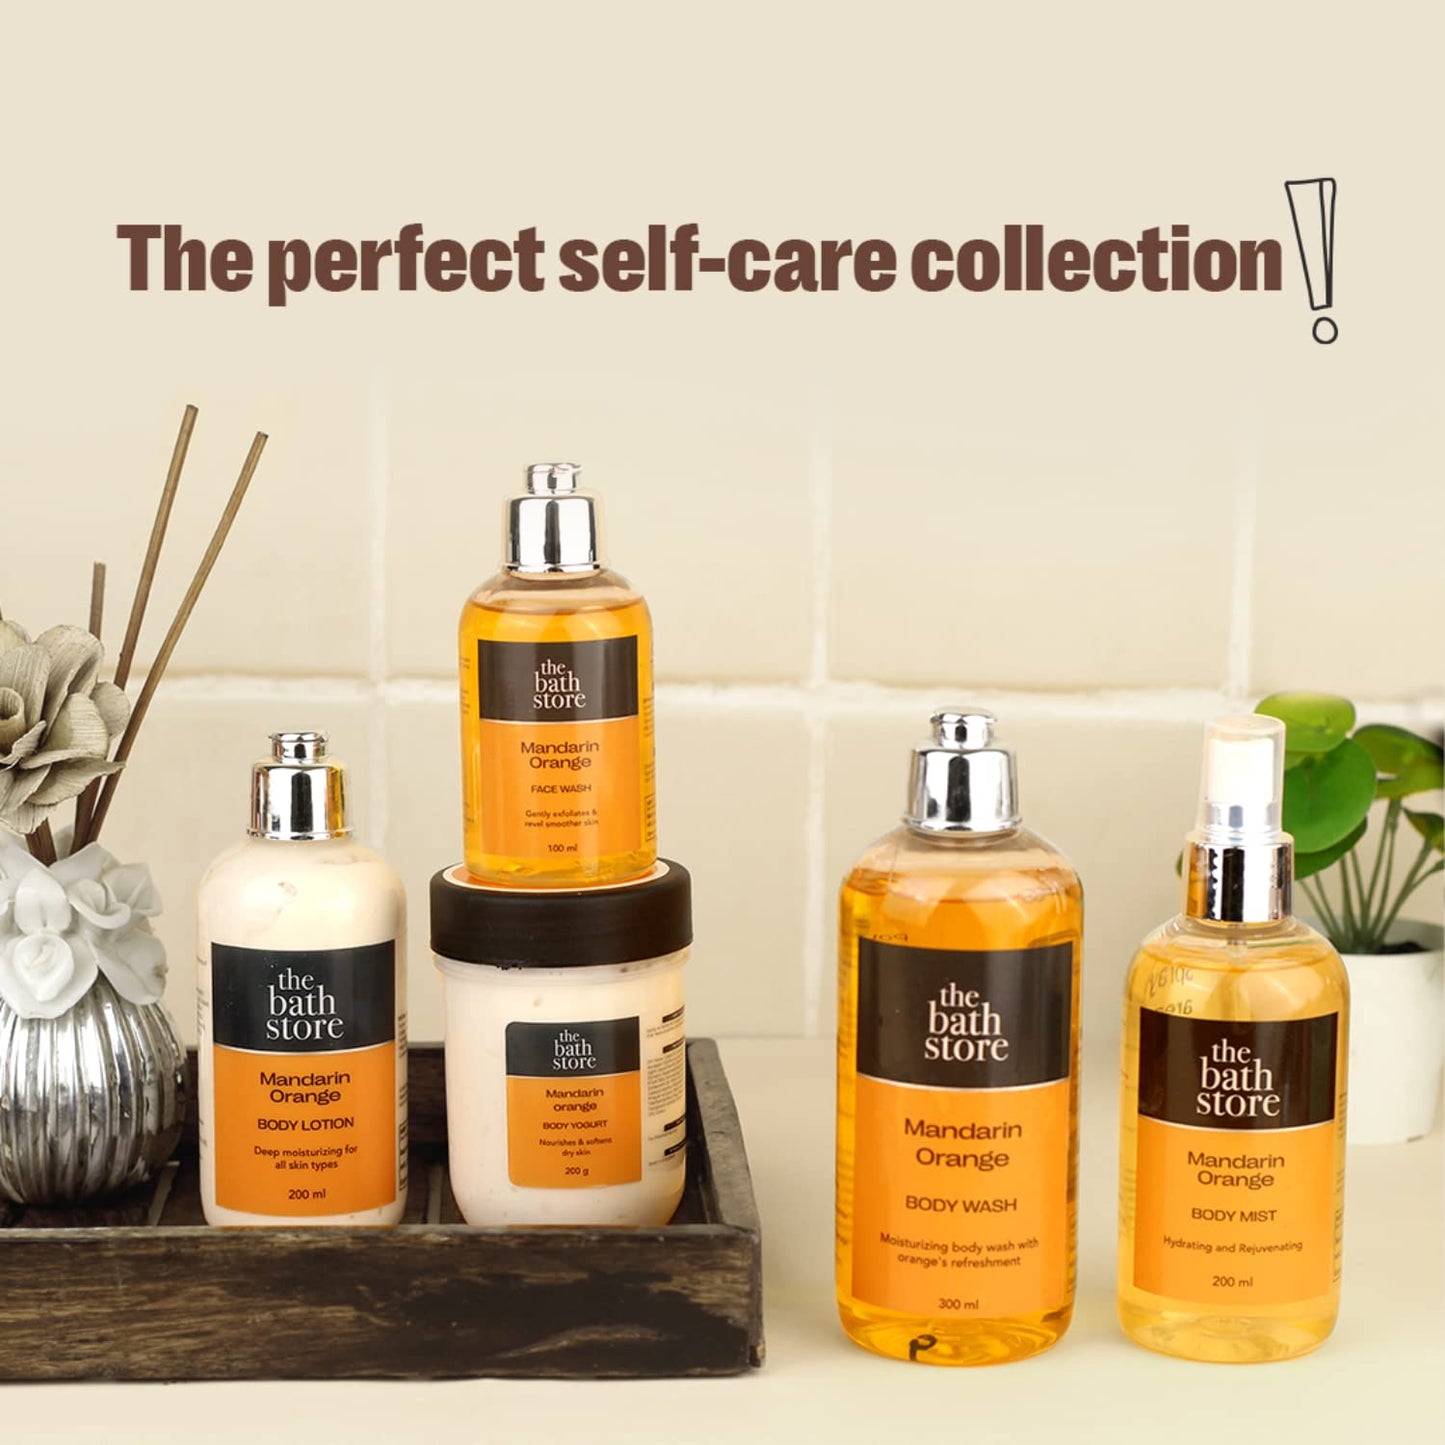 The Bath Store Mandarin Orange Body Mist - Refreshing Fragrance Women and Men  Long-Lasting Scent - 200ml Pack of 2